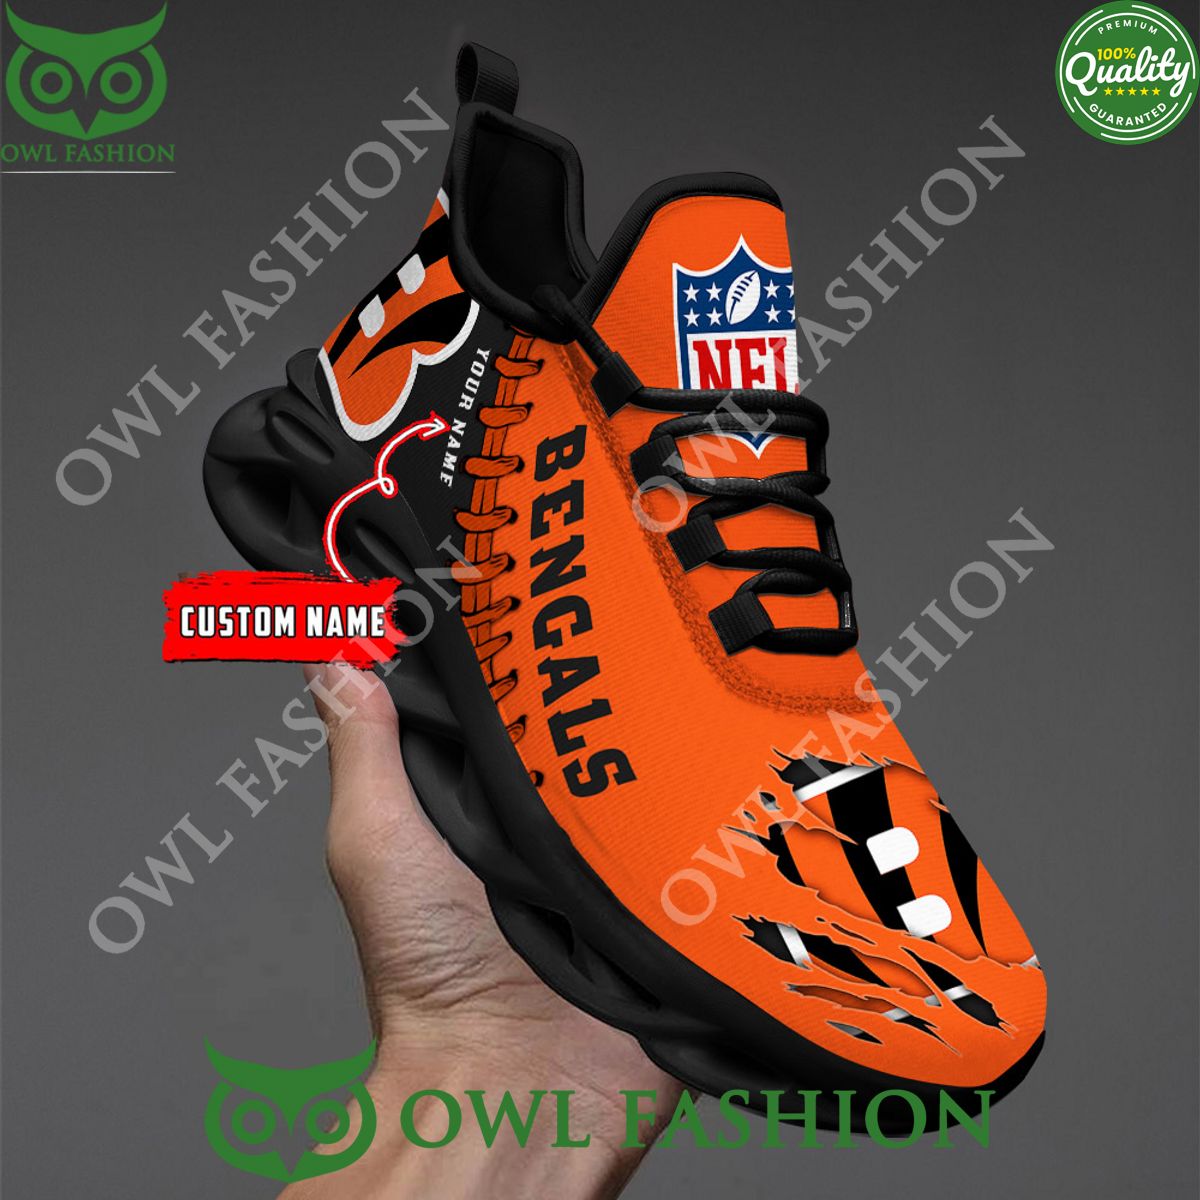 Custom name Cincinnati Bengals NFL Clunky Max soul Sneaker 2023 Nice shot bro